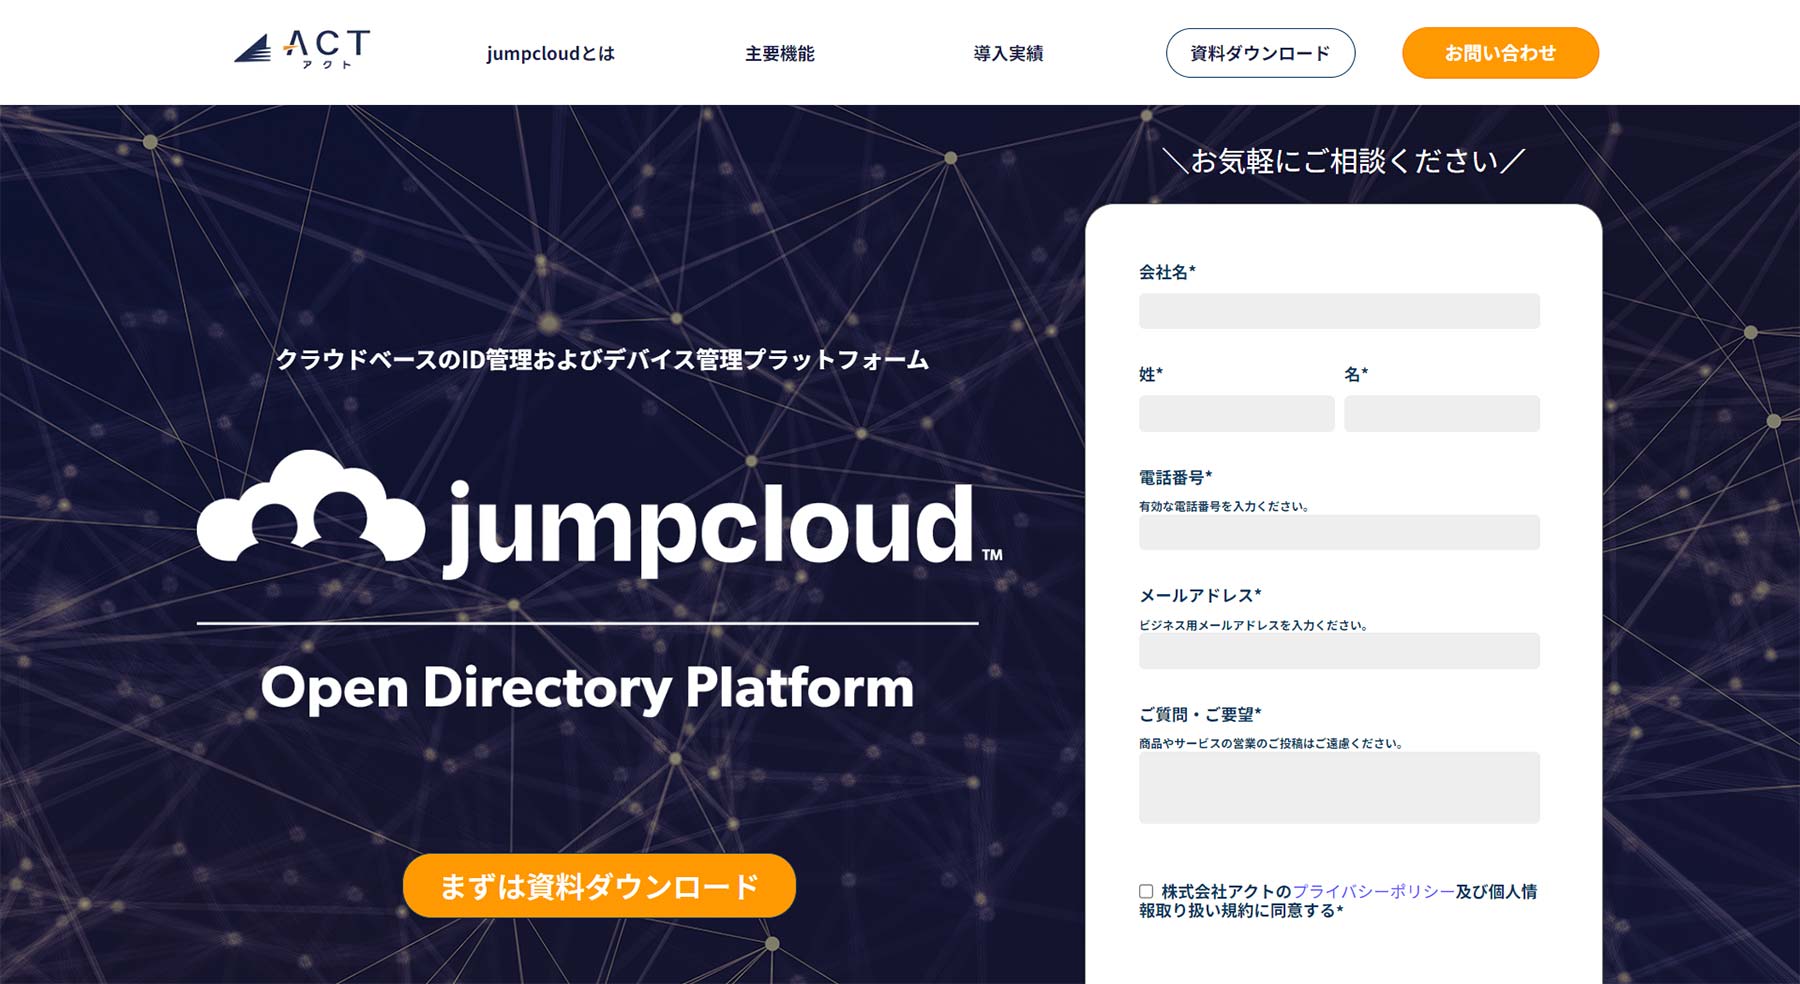 JumpCloud公式Webサイト